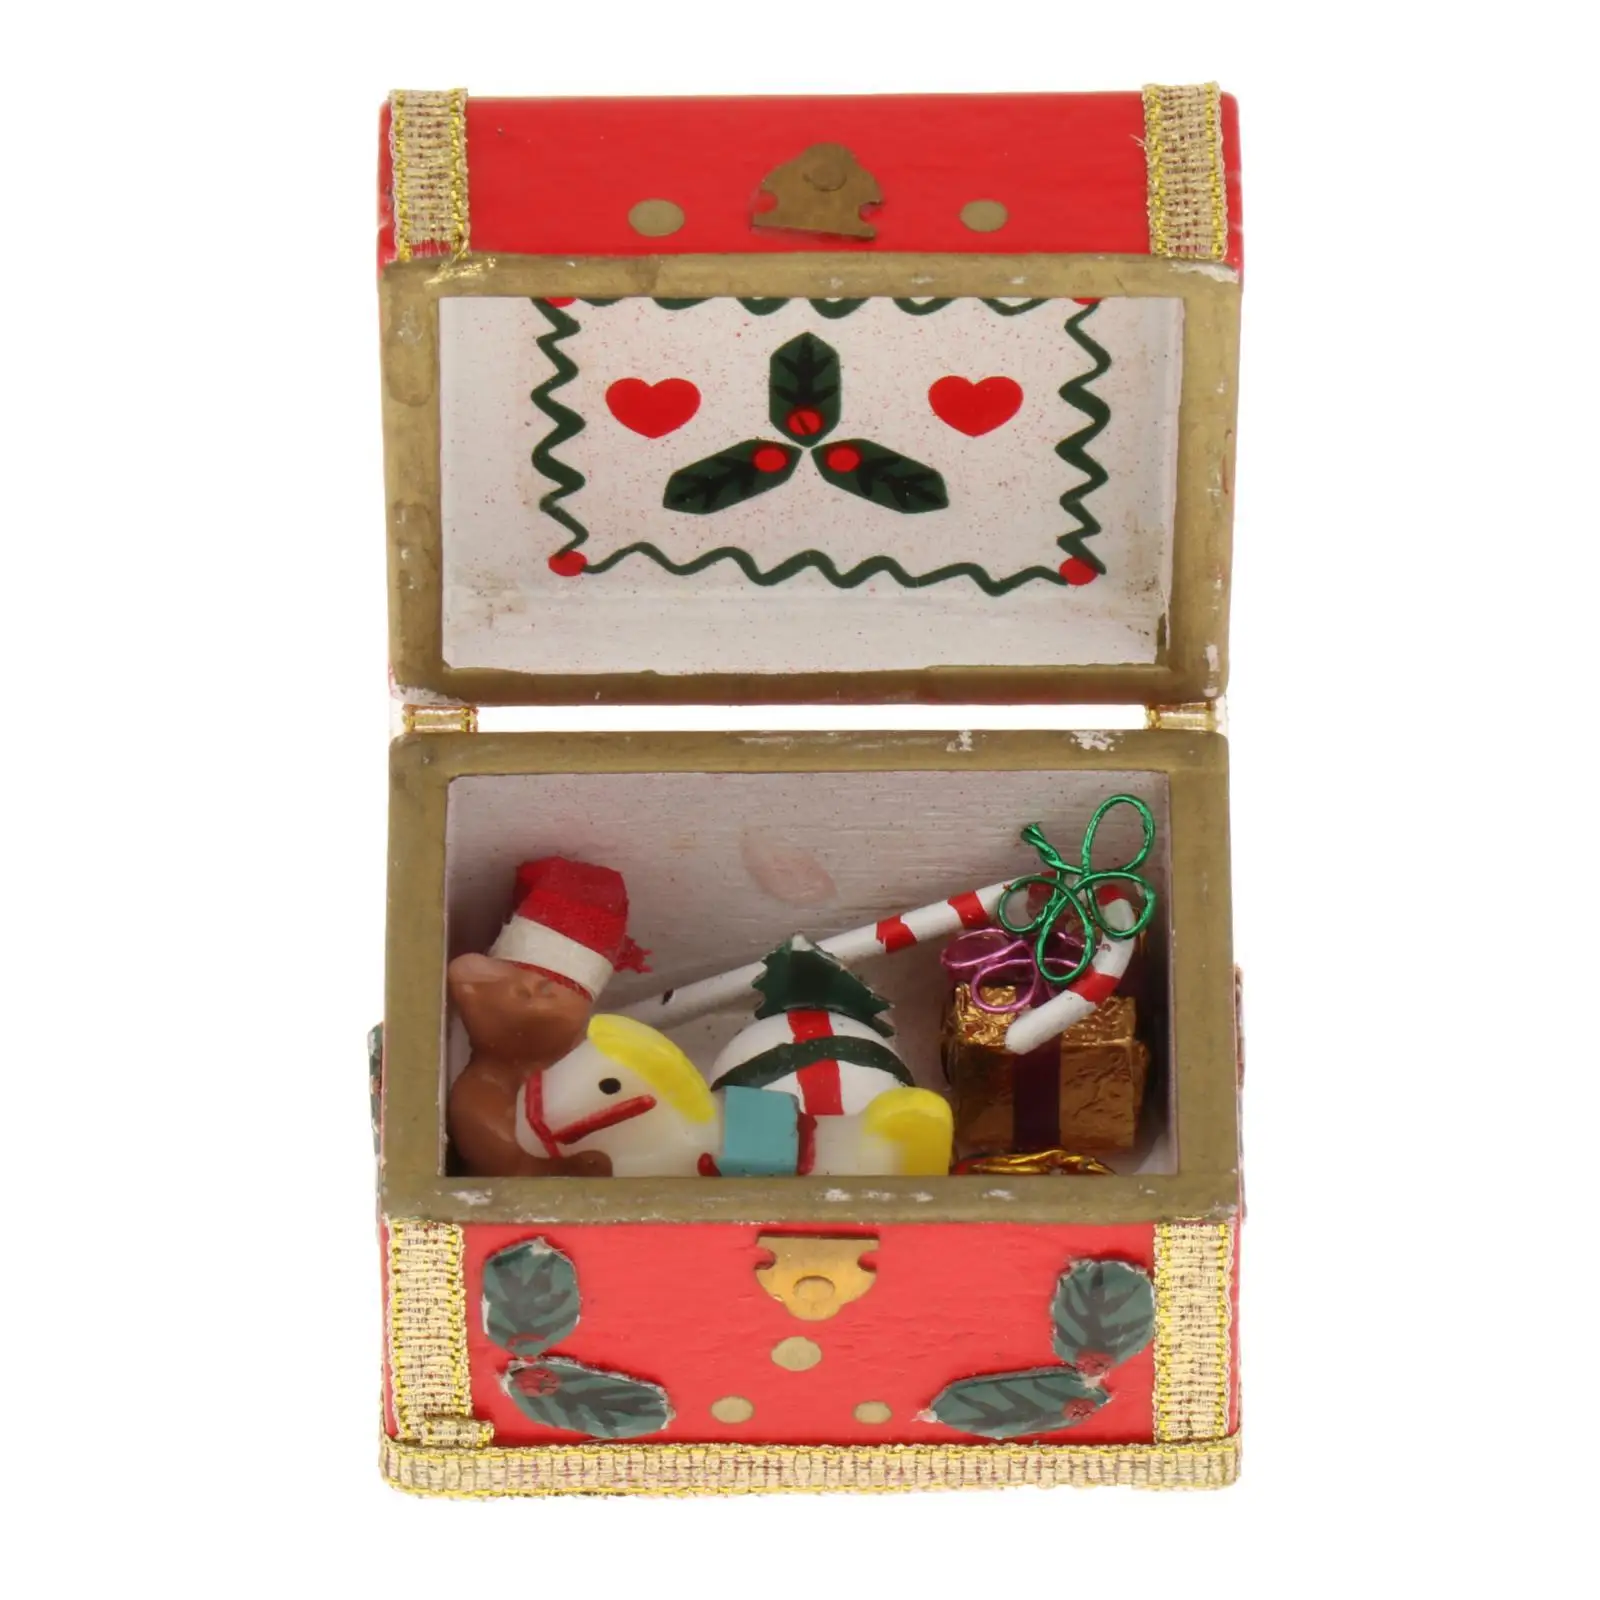 Christmas 1:12 Scale Miniature Treasure Chest Dollhouse Accessories for Scene Dollhouse Micro Landscape Accessory Ornaments